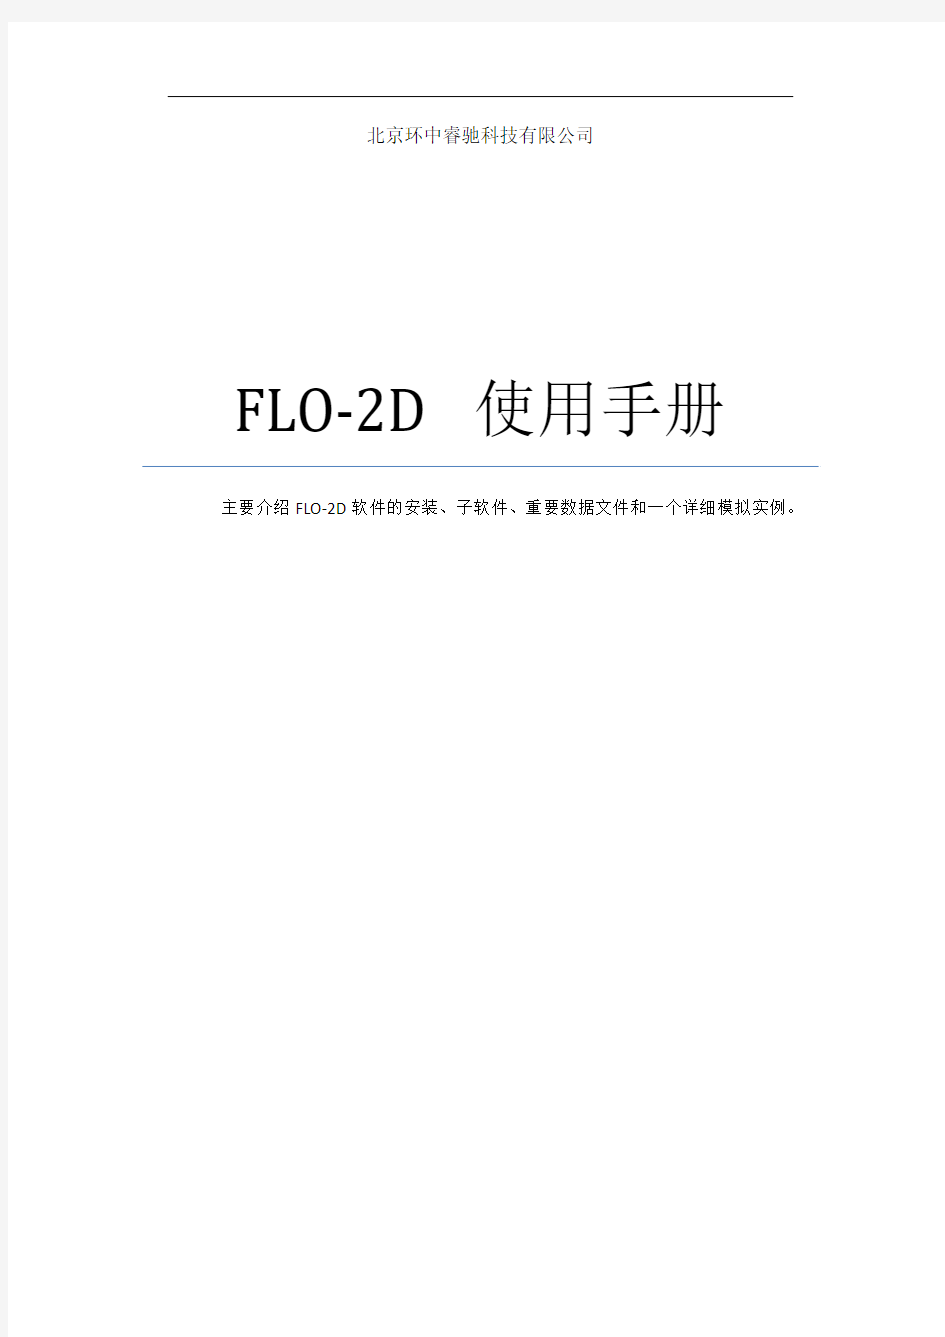 FLO-2D使用手册-Workshop实例-睿驰原创